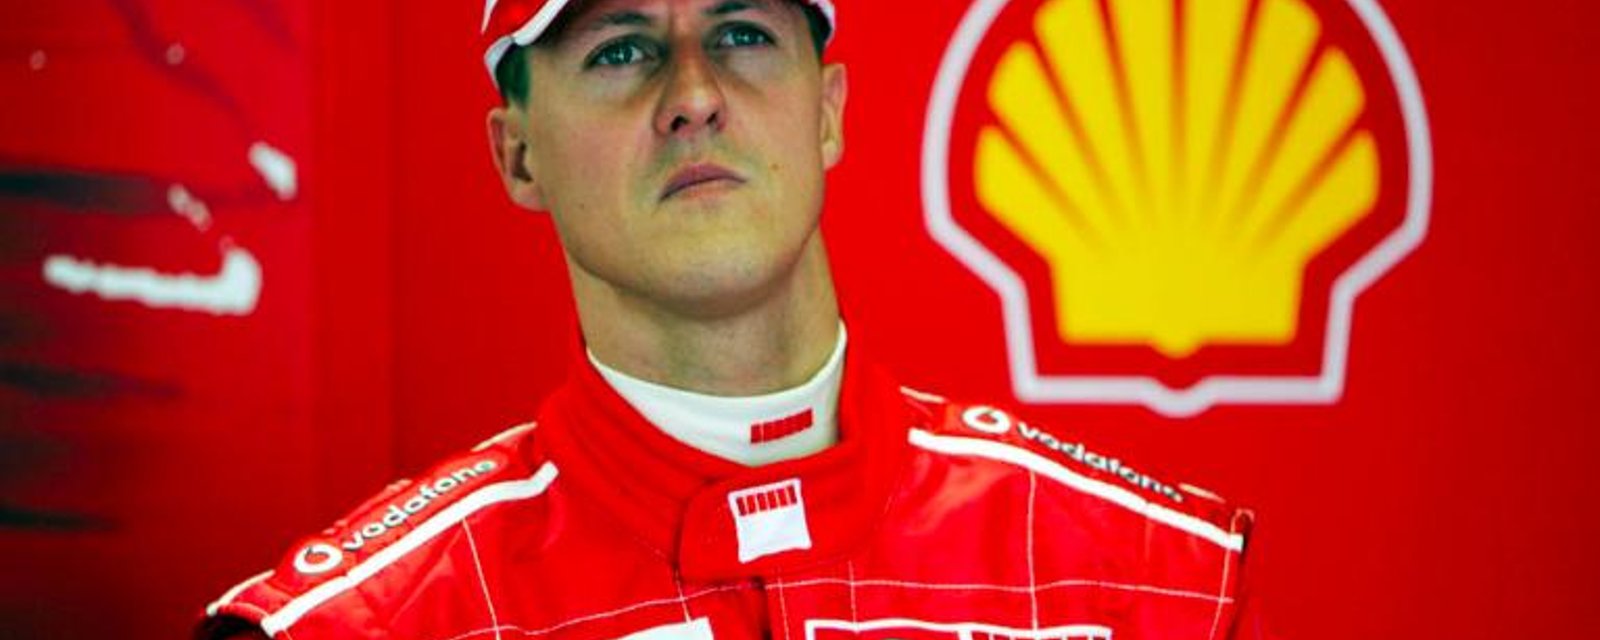 De nouveaux détails déchirants concernant l'état de santé de Michael Schumacher